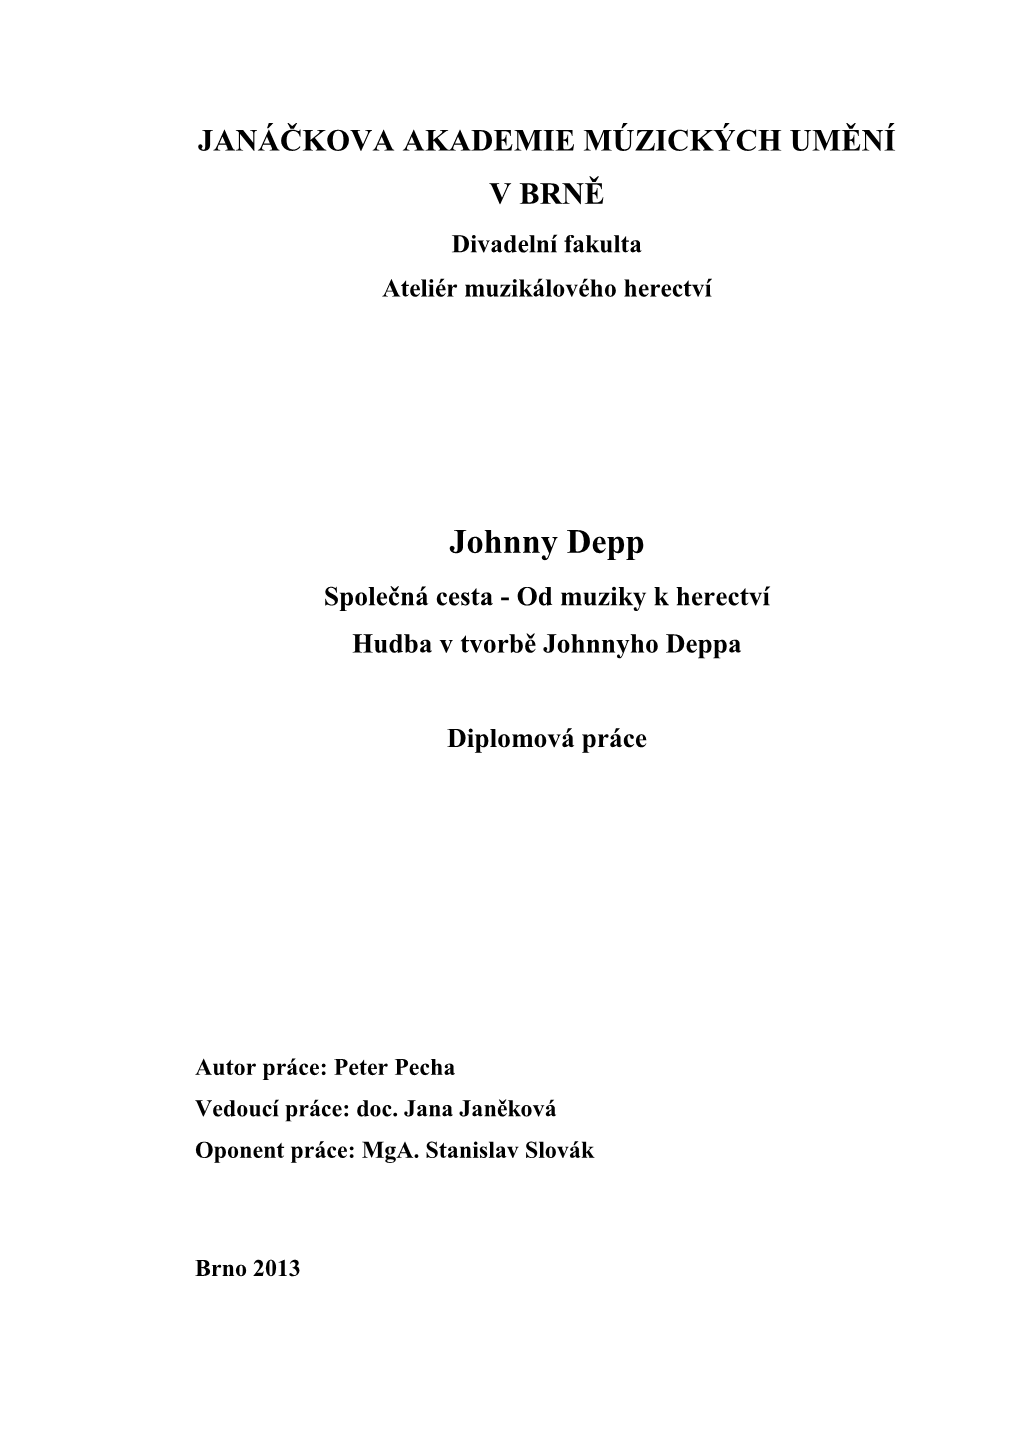 Johnny Depp Společná Cesta - Od Muziky K Herectví Hudba V Tvorbě Johnnyho Deppa